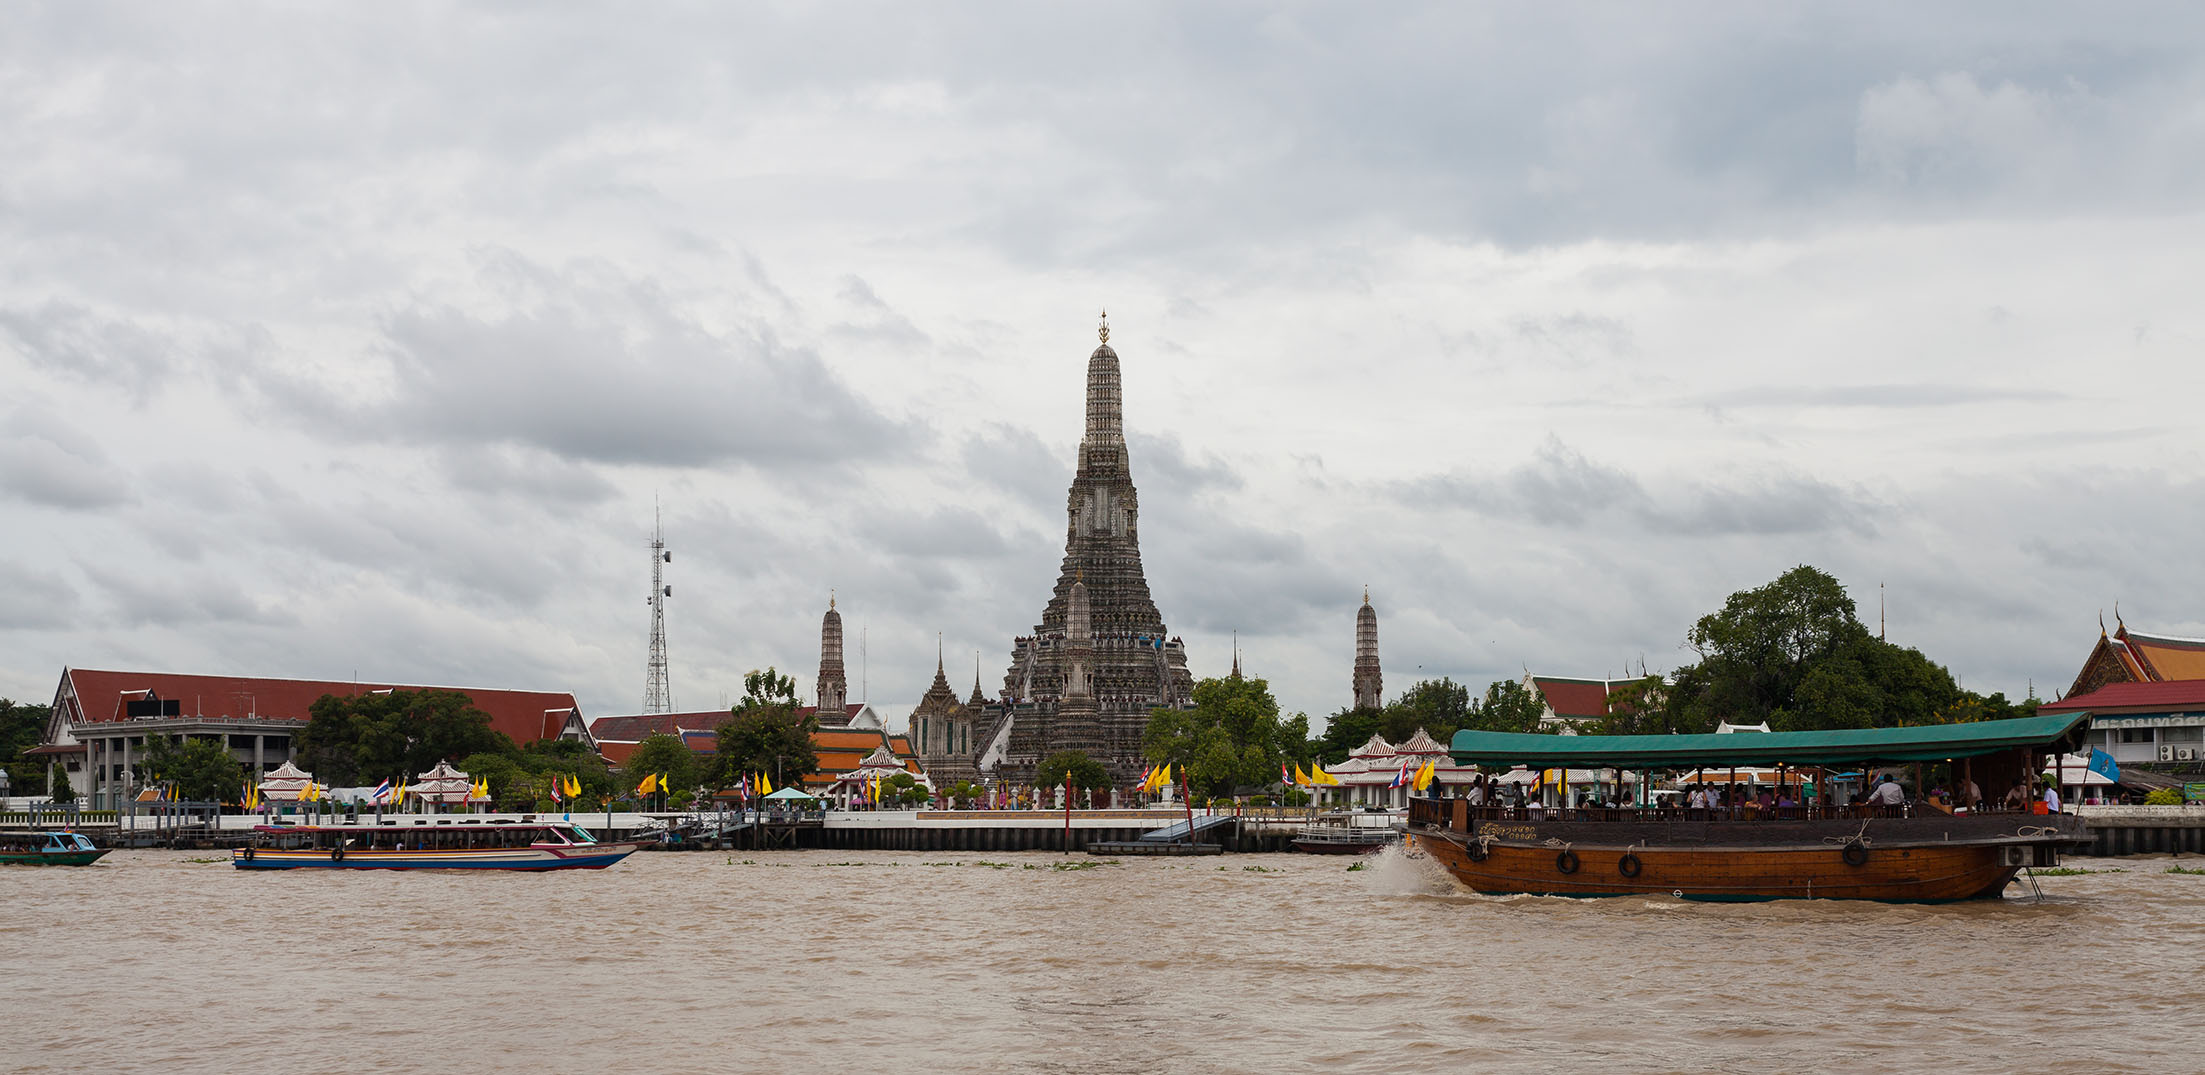 Kinh nghiệm du lịch Bangkok Thái Lan tự túc (Phần 3: danh lam thắng cảnh, hoàn thuế)